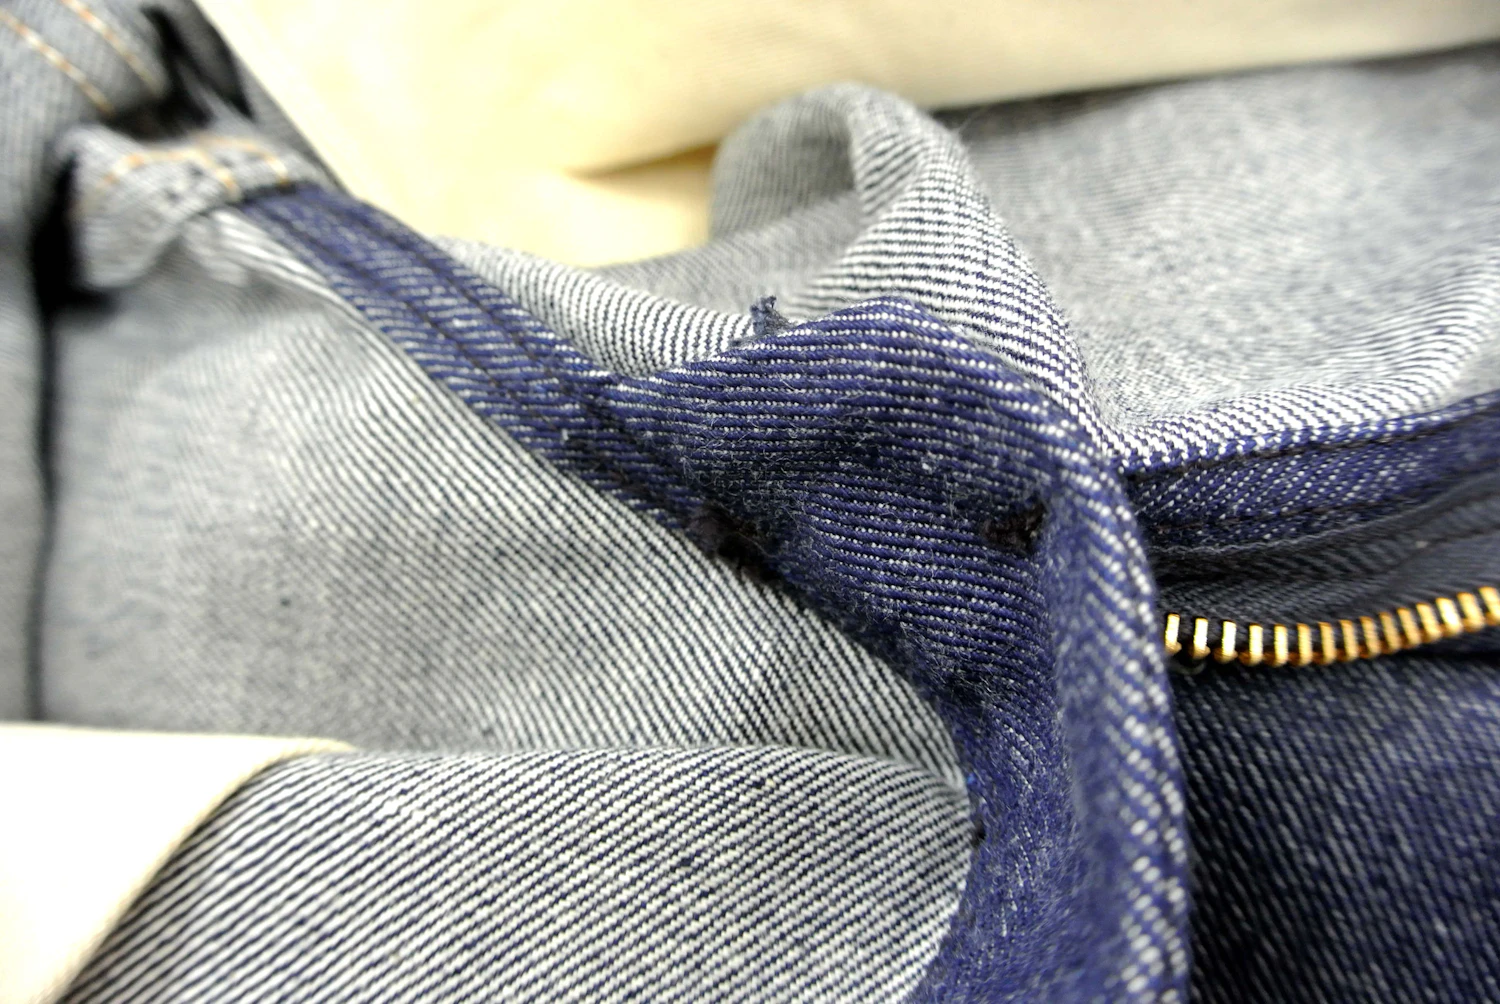 Wranglerの5ポケットデニムパンツの裏側。細部までこだわった縫製になっており前立裏にブランドネームタグがついているのも昔からの特徴だ